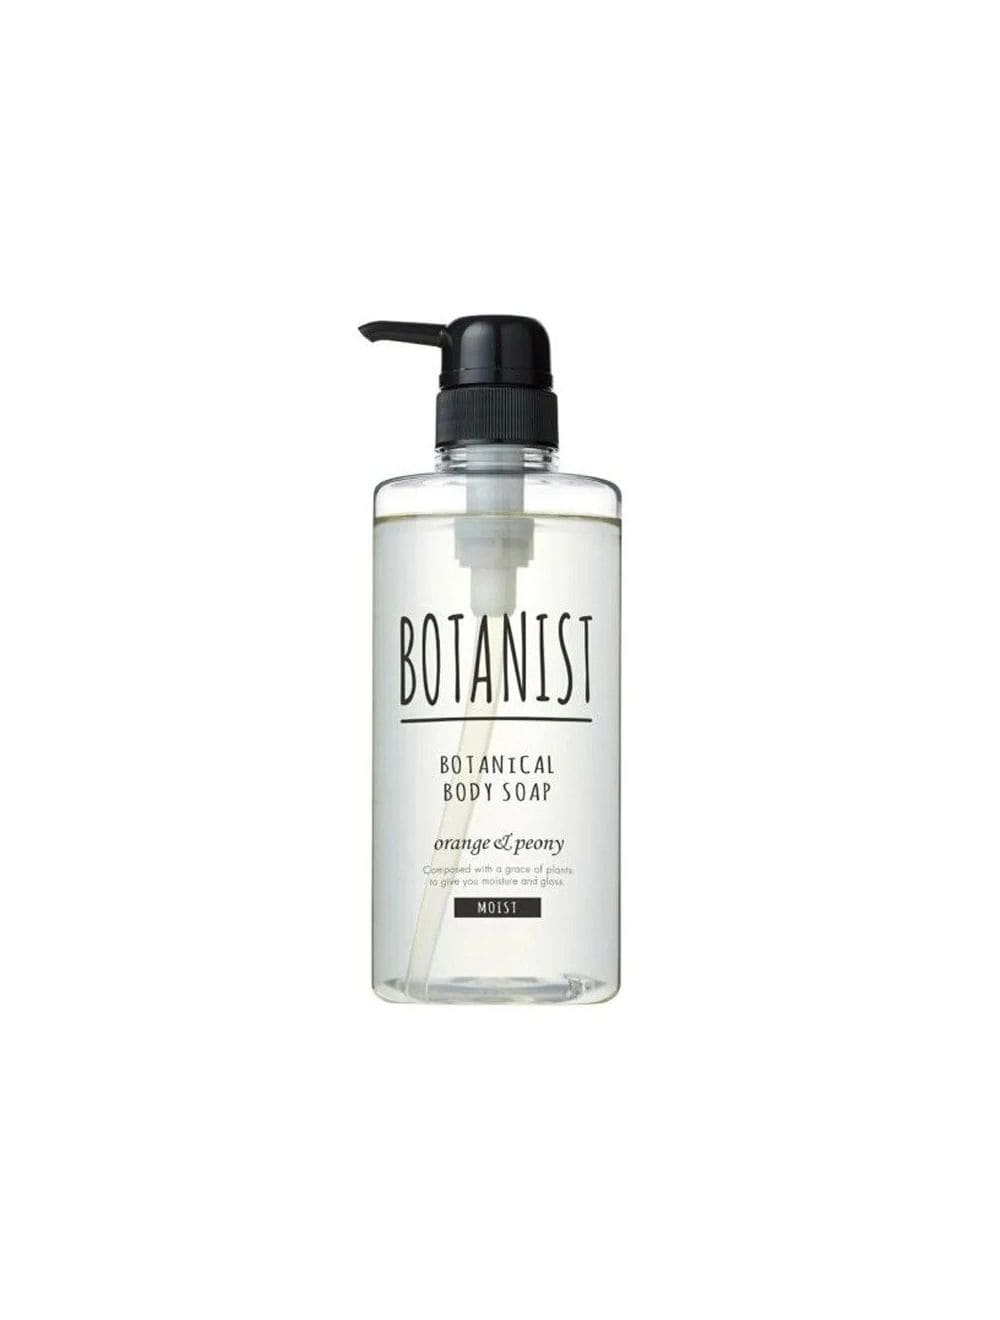 BOTANIST_Botanical Body Soap orange & peony_Cosmetic World